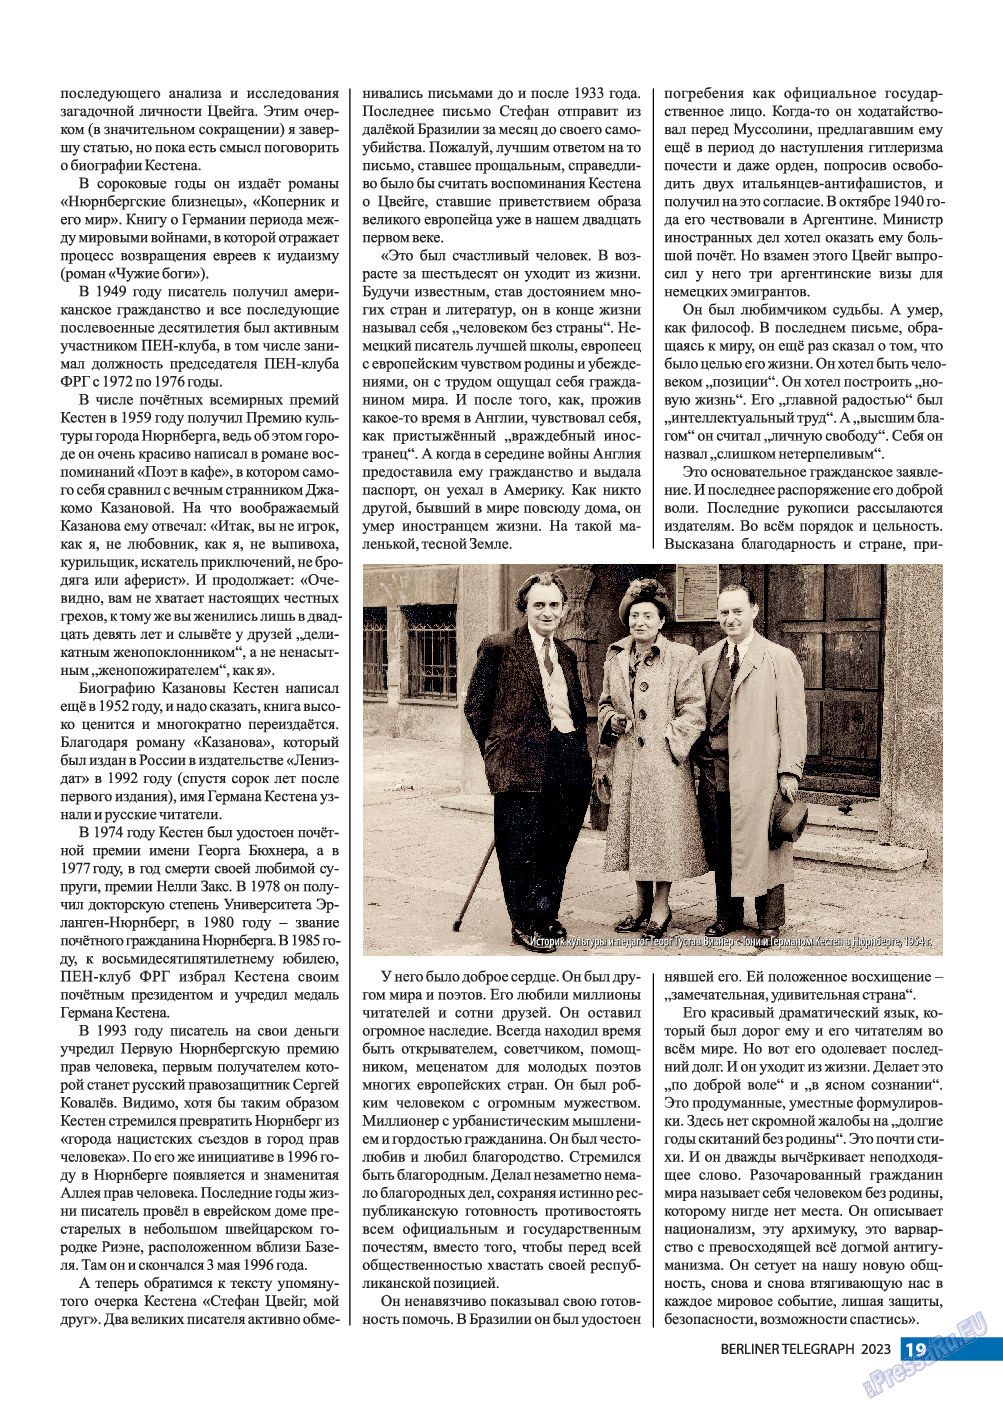 Берлинский телеграф, журнал. 2023 №2 стр.19